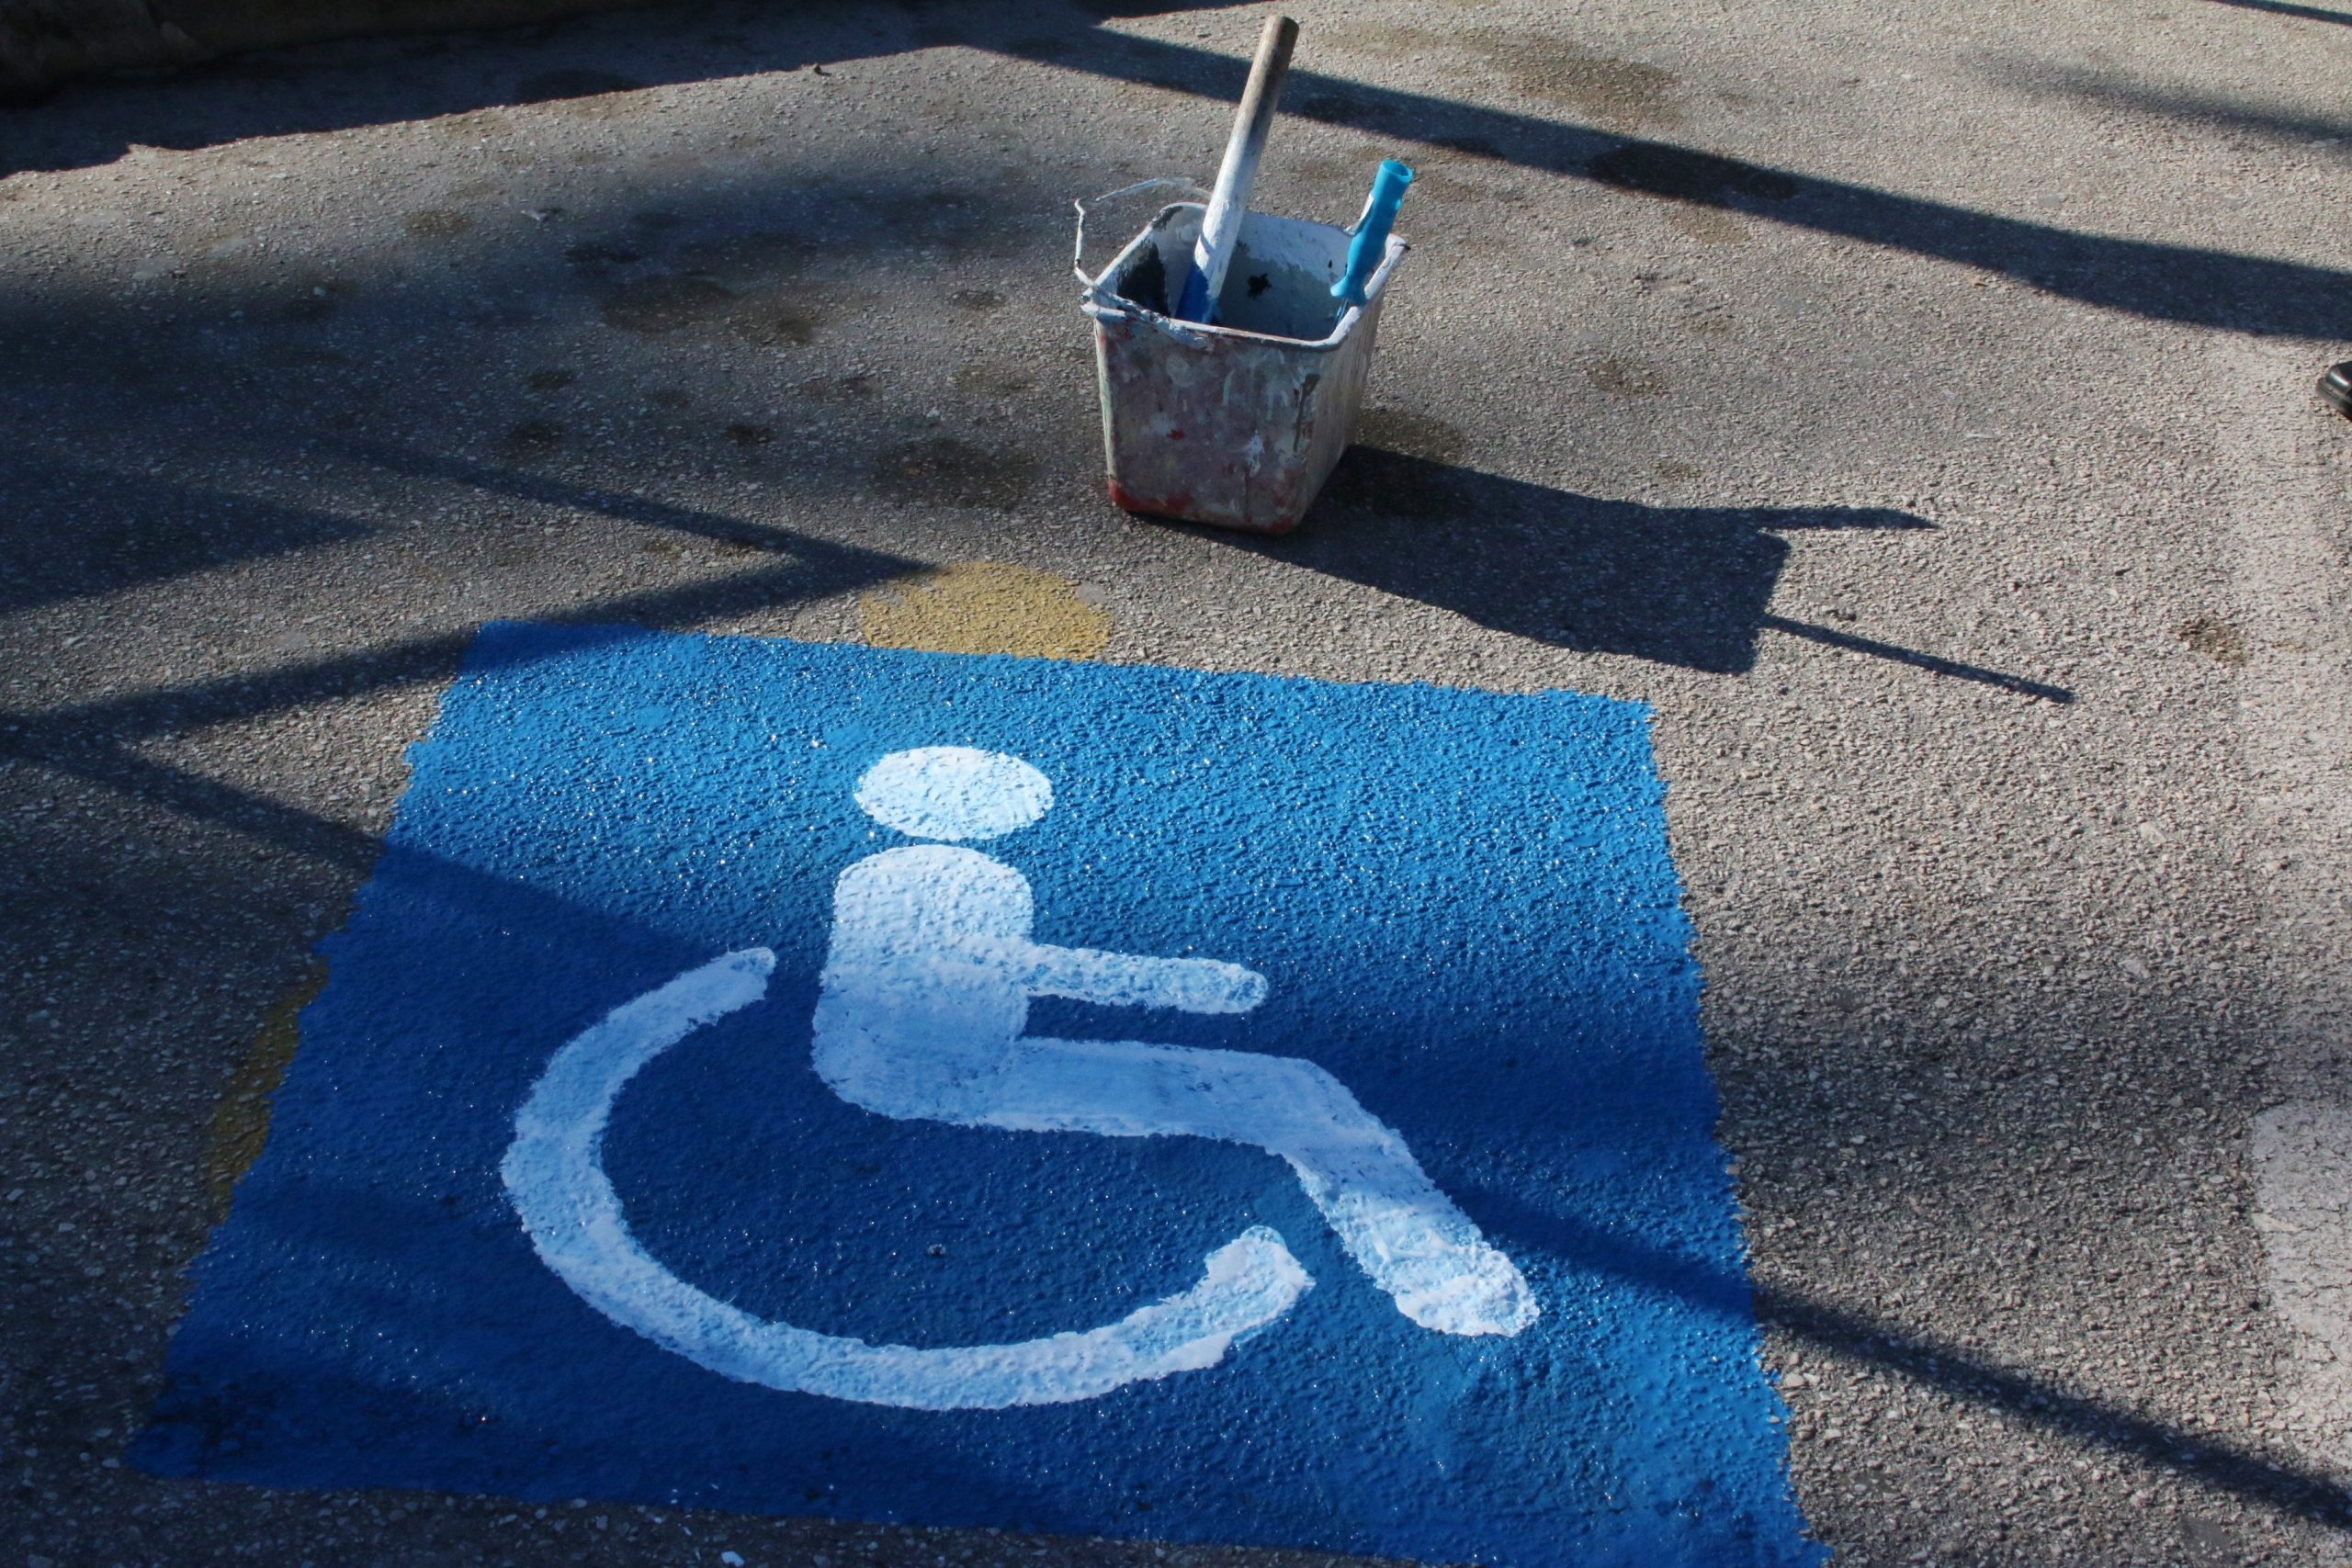 Συνήγορος του Πολίτη: Στο επίκεντρο τα άτομα αναπηρία και οι προνοιακές παροχές στην τρίτη ηλικία